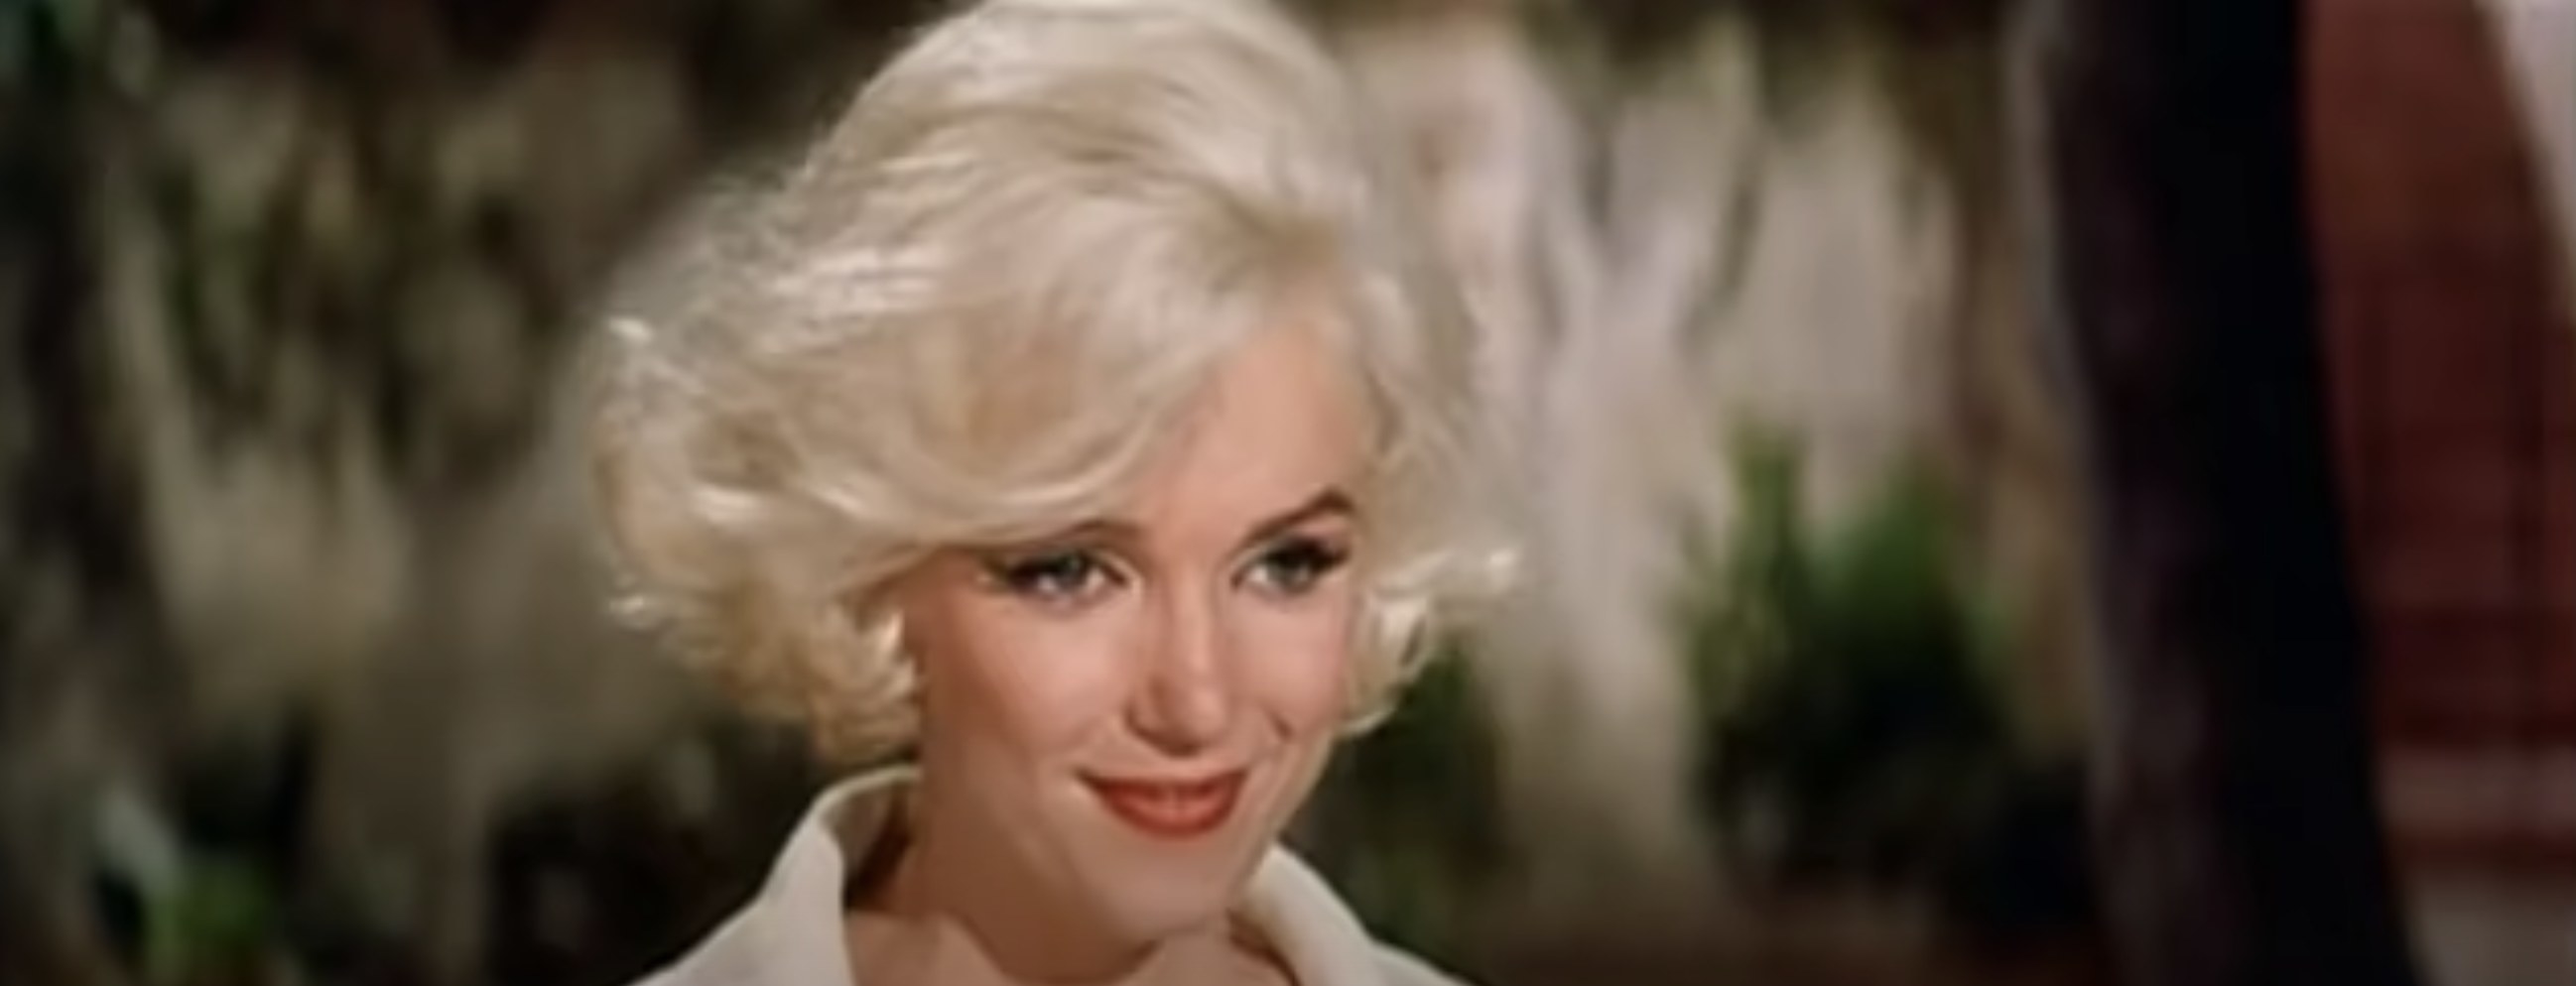 Marilyn Monroe smiles